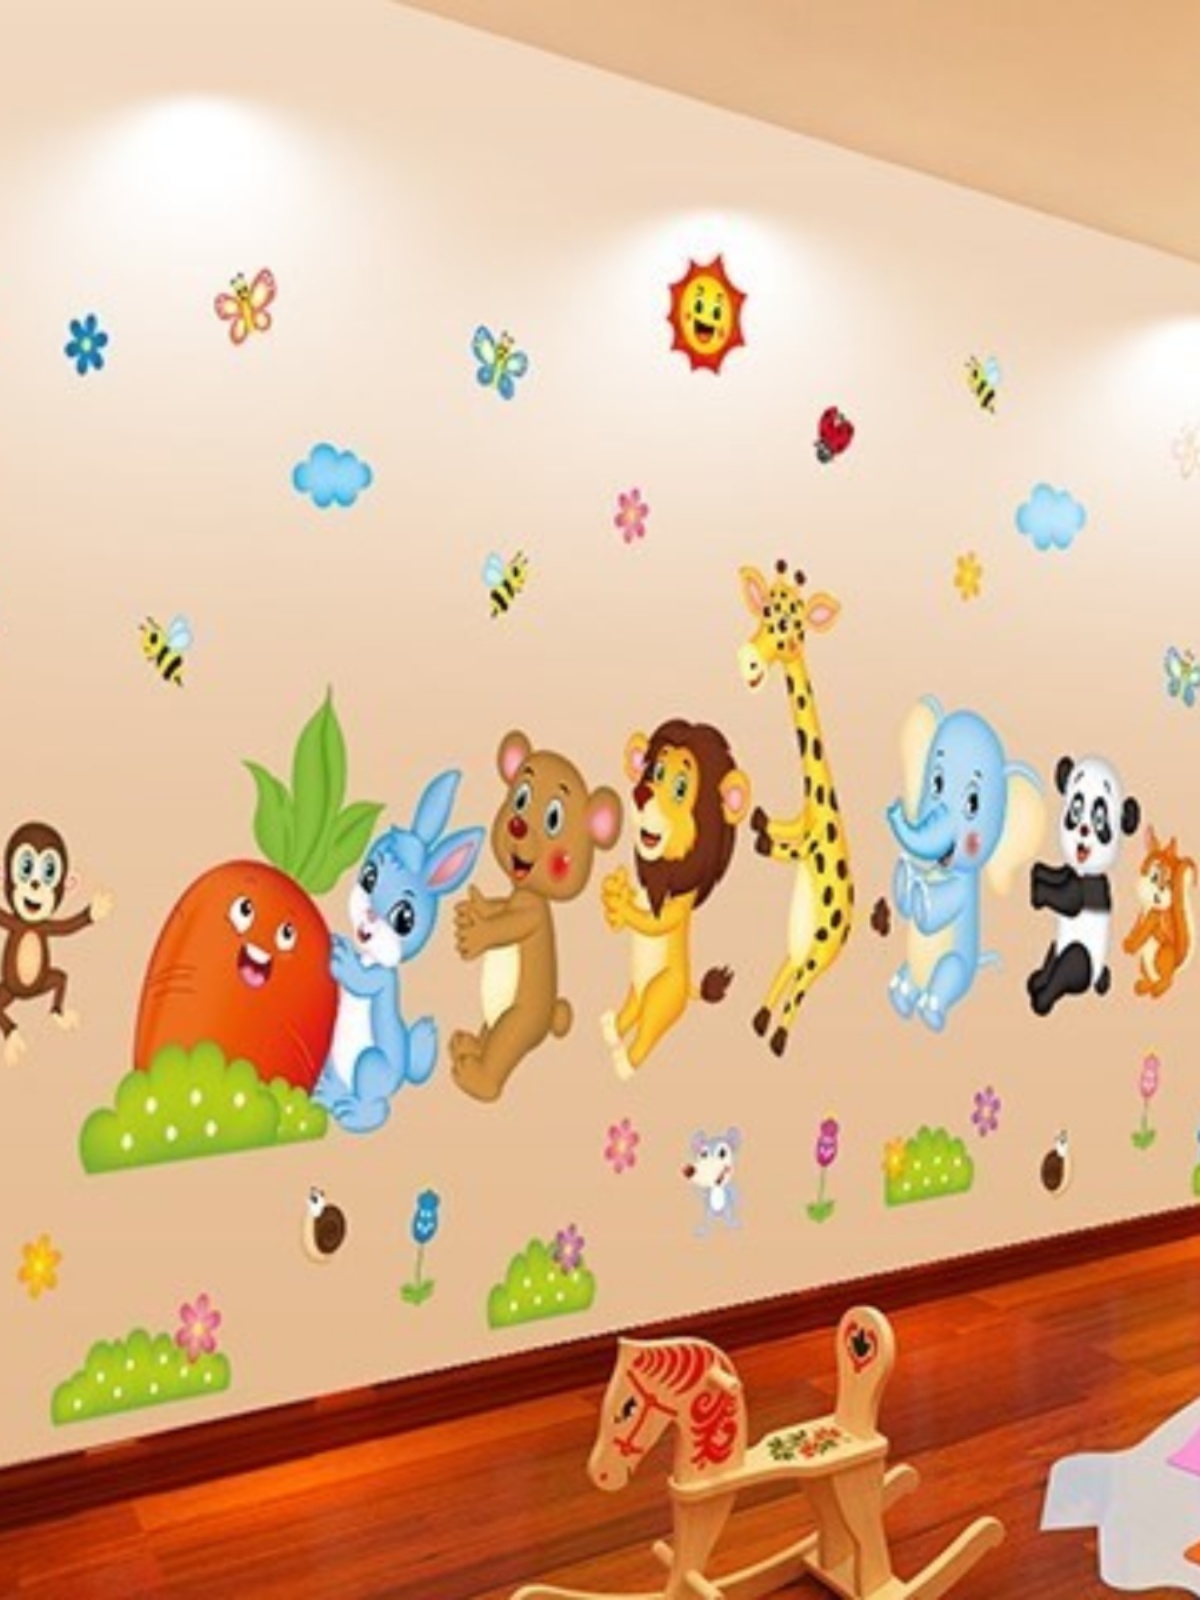 新款教室布置动物学校装饰幼儿园墙贴画儿童房宝宝卧室班级玻璃墙图片